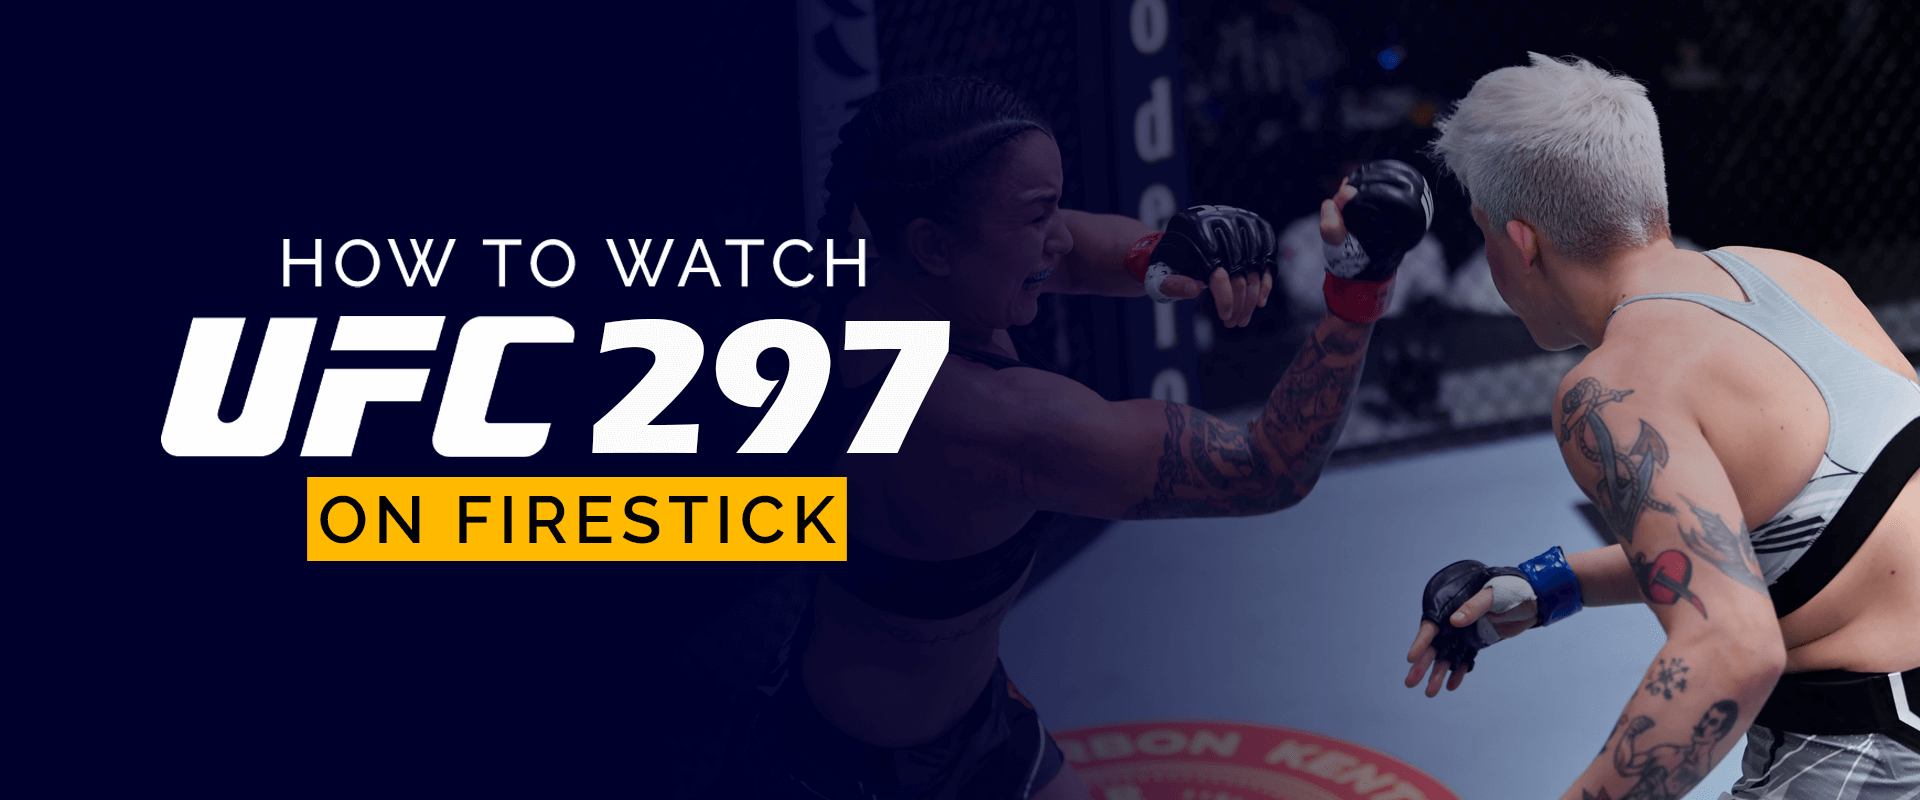 Firestick'te UFC 297 Nasıl İzlenir